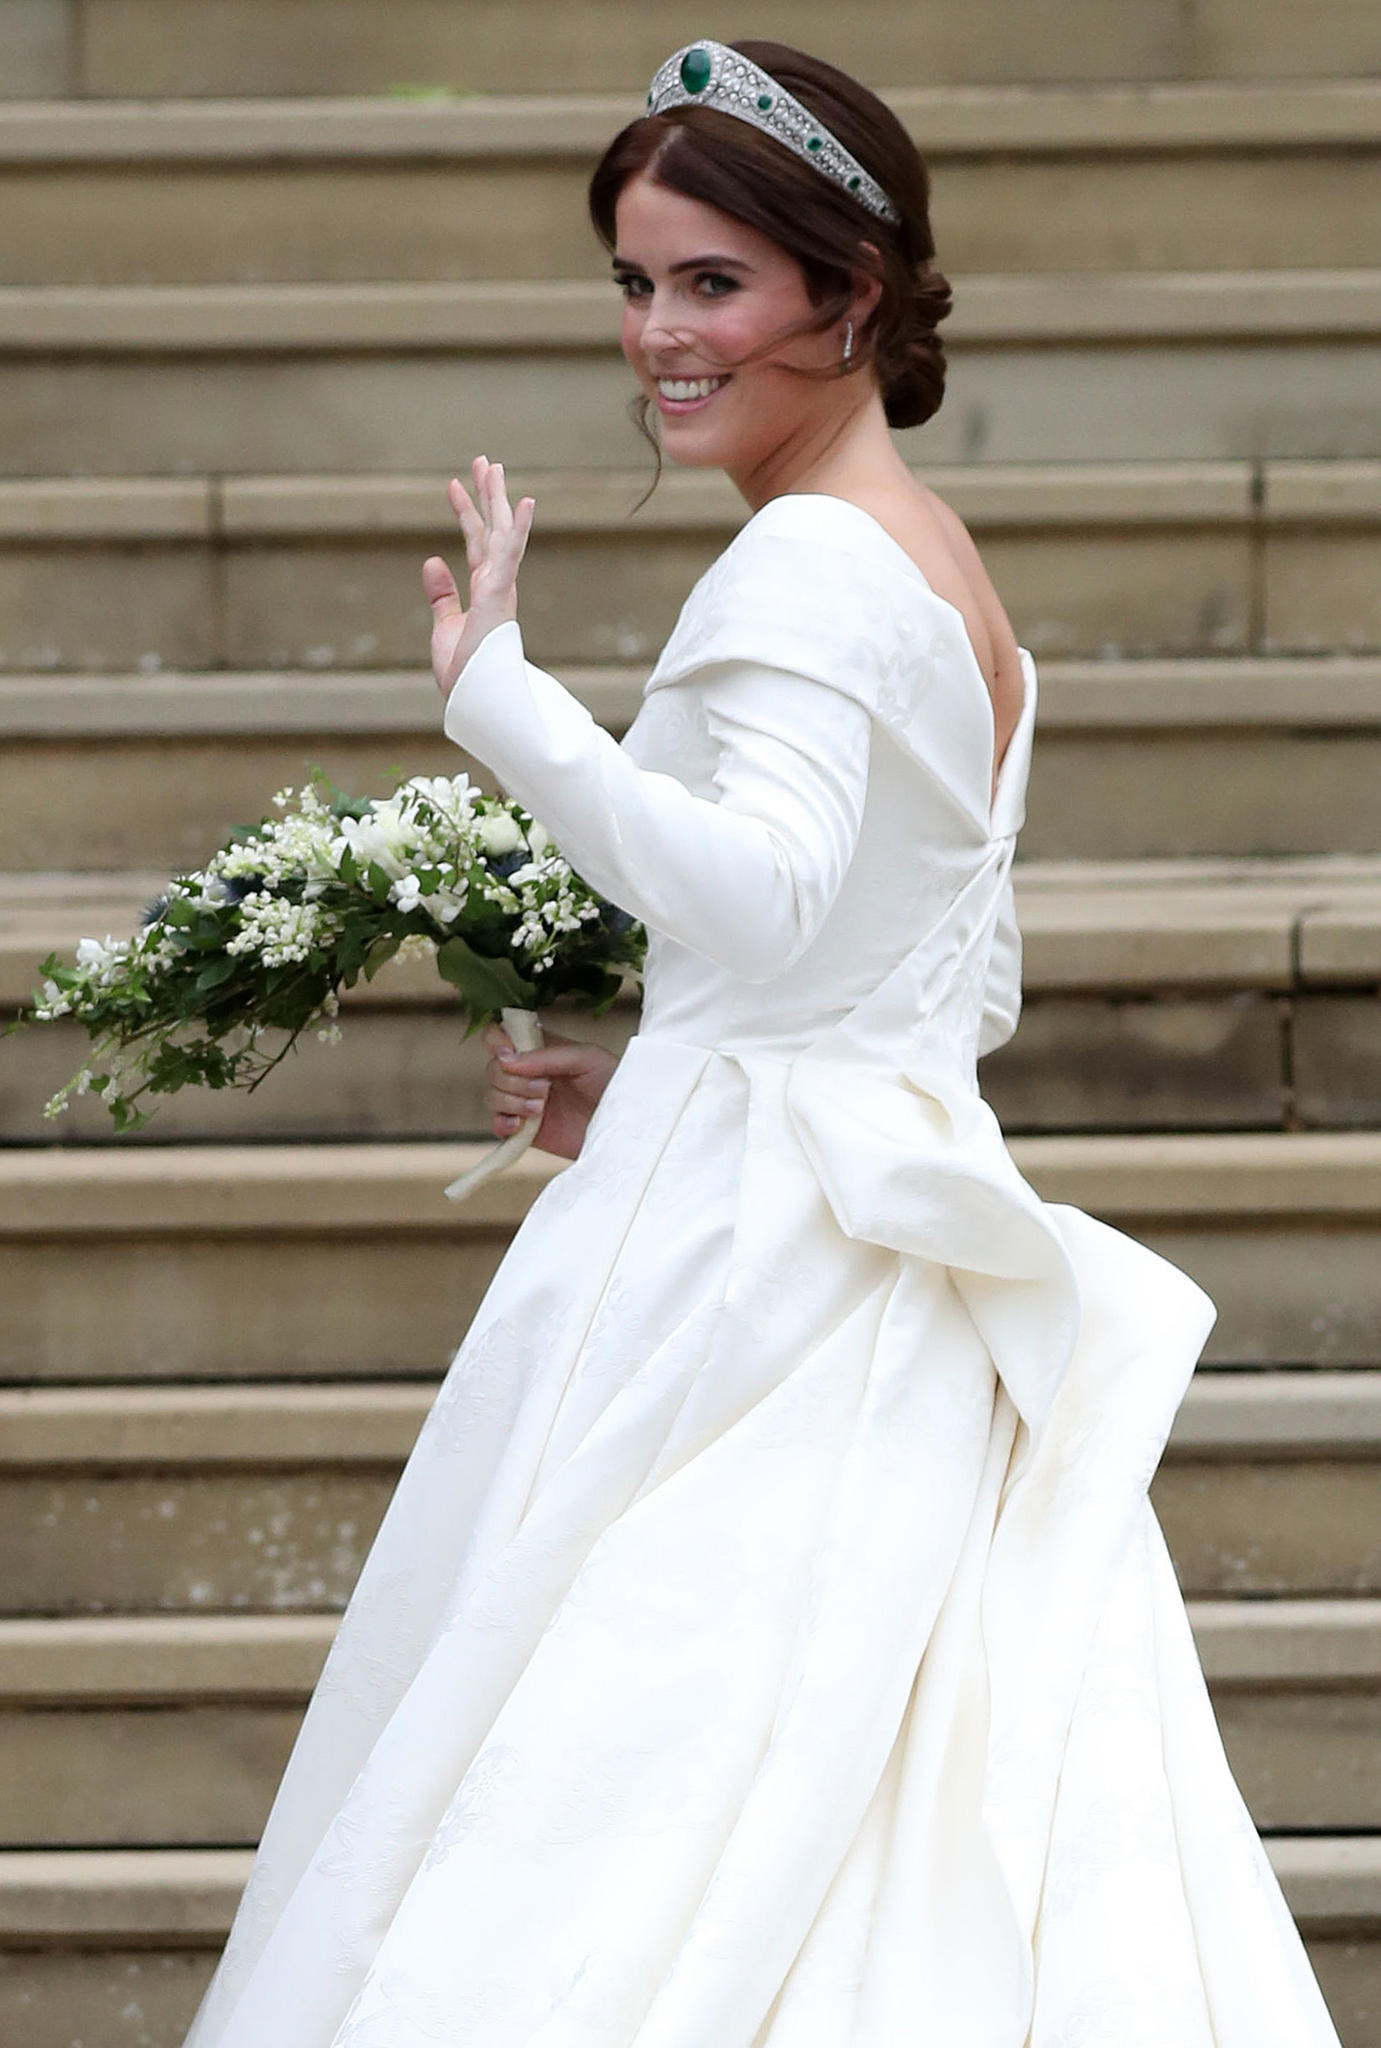 Prinzessin Hochzeit
 Prinzessin Eugenie In sem Kleid heiratet sie Jack